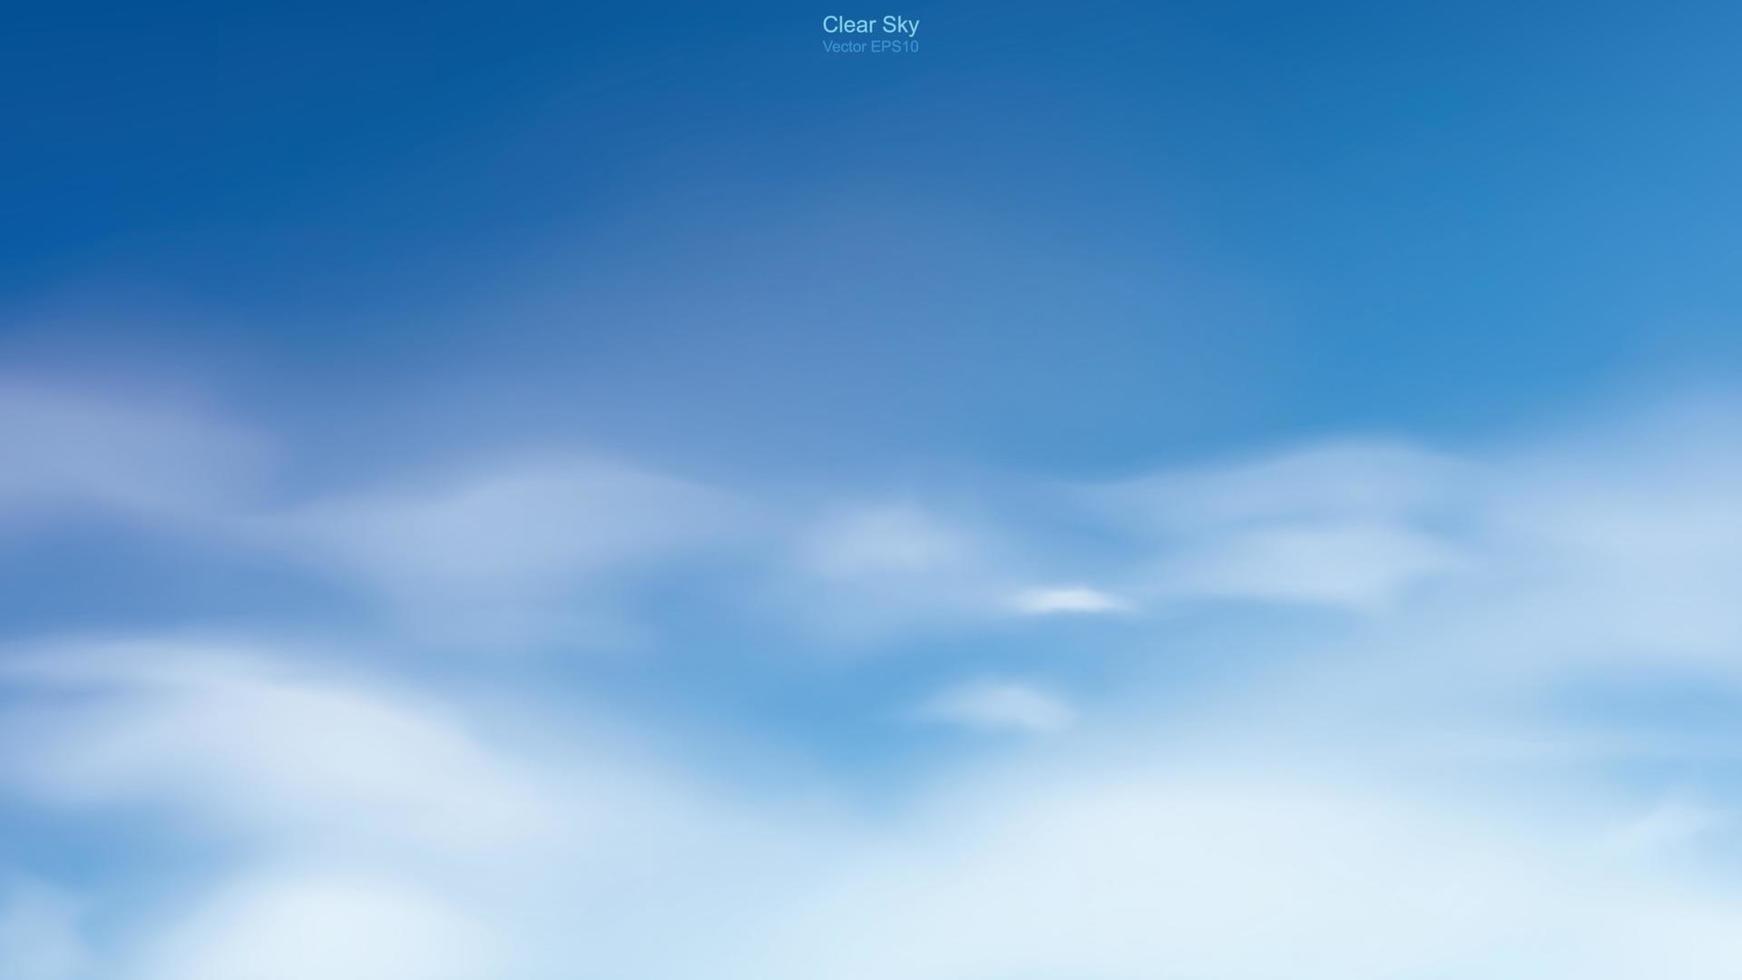 blauwe hemelachtergrond met witte wolken. abstracte hemel voor natuurlijke achtergrond. vectorillustratie. vector